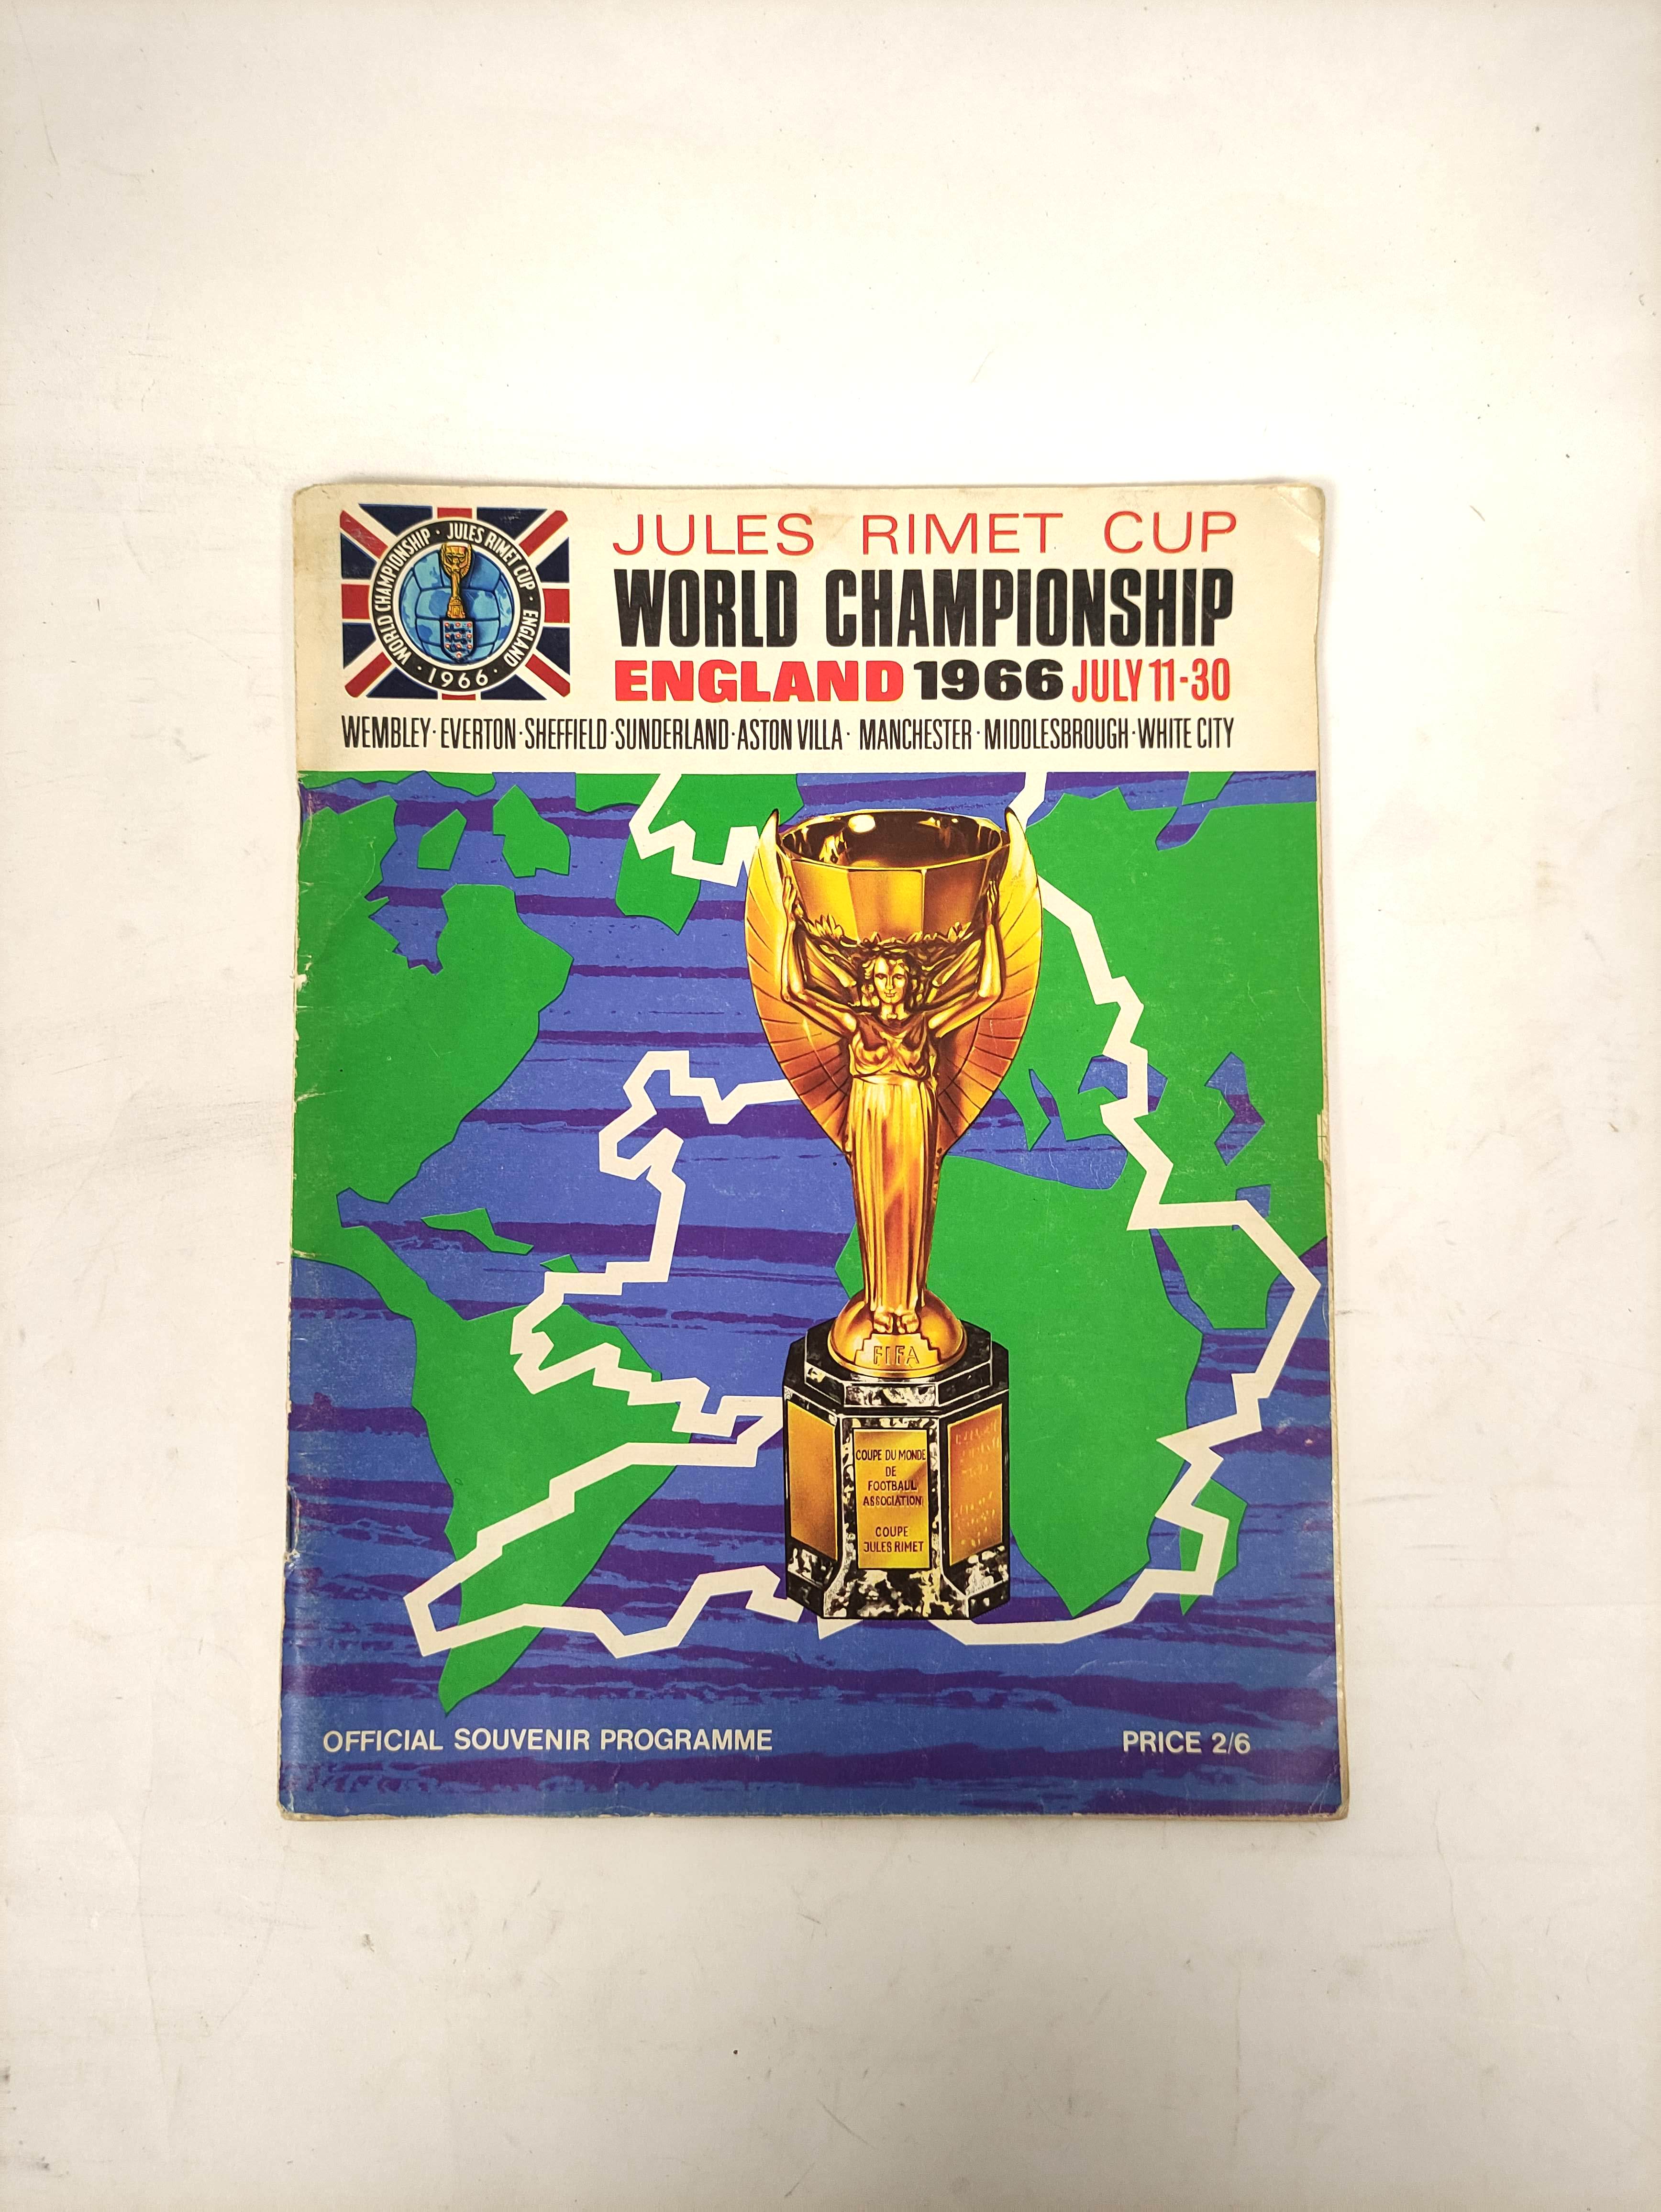 World Cup 1966.  Jules Rimet Cup World Championship Official Souvenir Programme. Illus. & adverts.